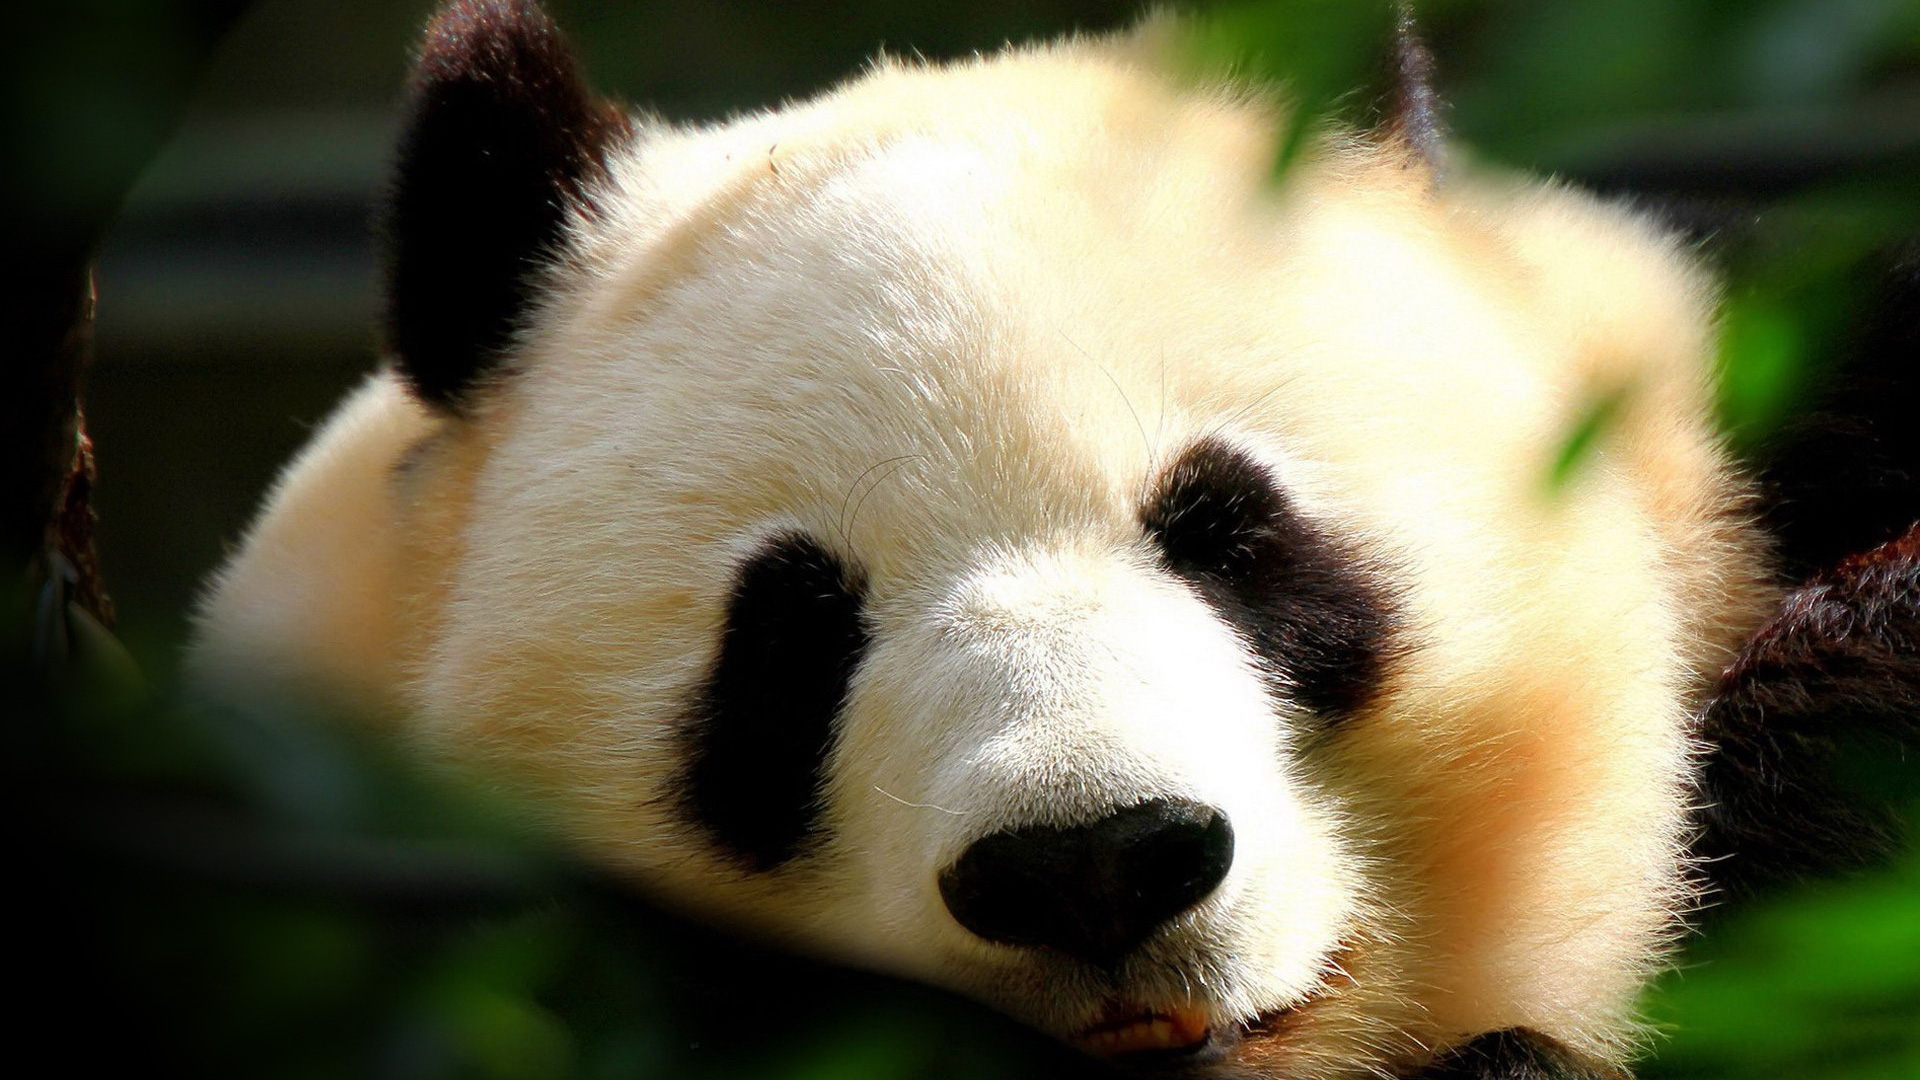 Wallpaper Panda Full HD 1080p Adorable